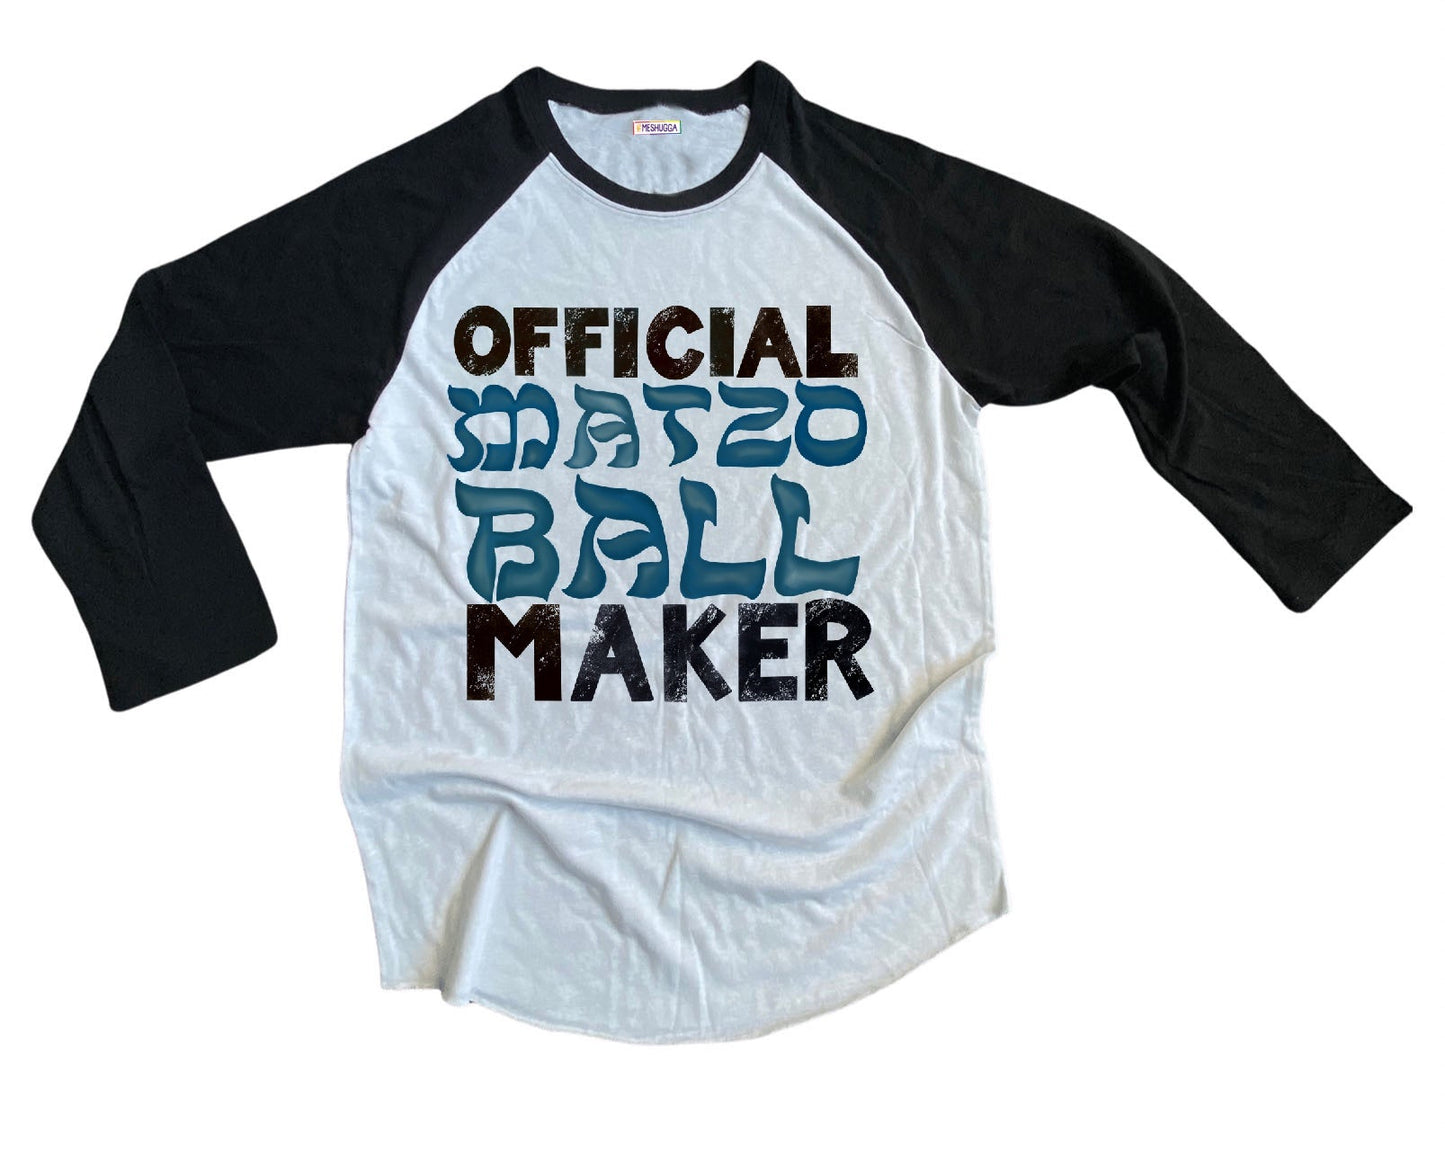 Official Matzo Ball Maker Baseball Shirt - Adult